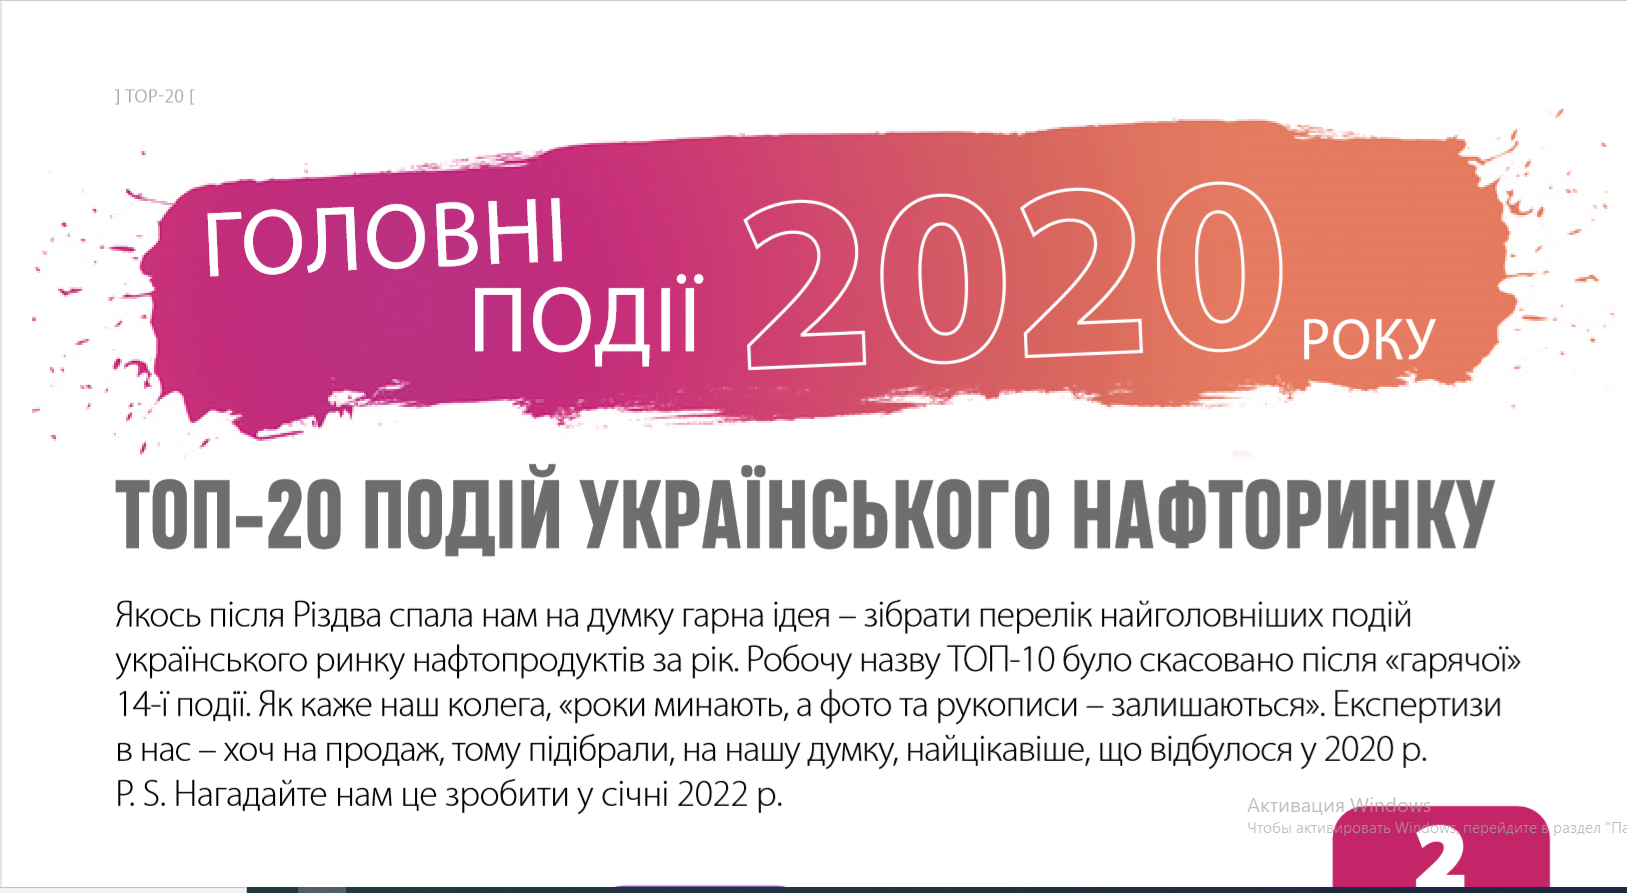 ТОП-20 ПОДІЙ УКРАЇНСЬКОГО НАФТОРИНКУ 2020